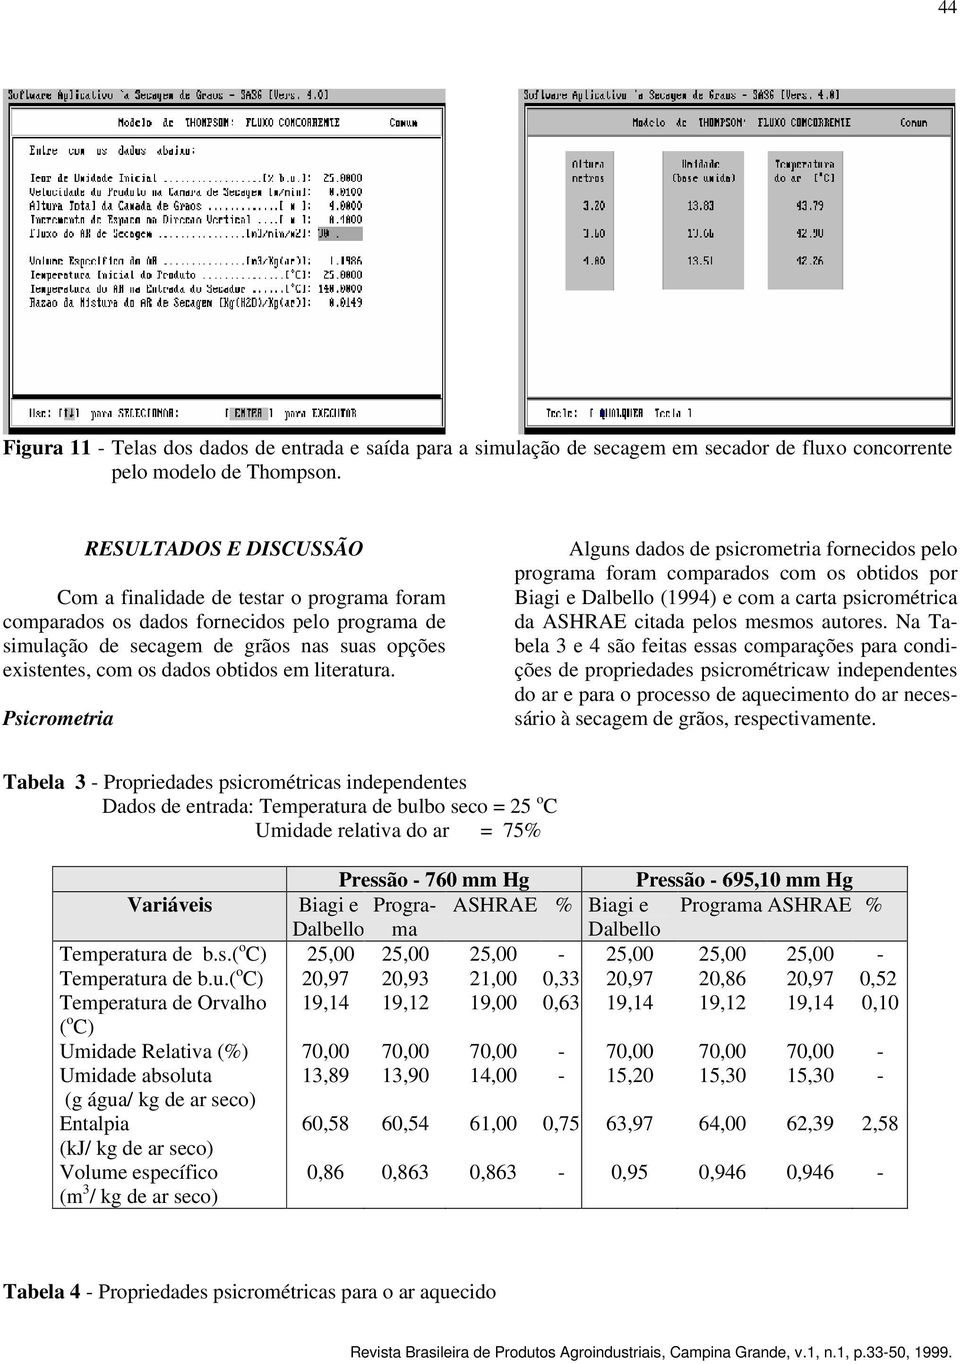 Psicrometria Alguns dados de psicrometria fornecidos pelo programa foram comparados com os obtidos por Biagi e Dalbello (1994) e com a carta psicrométrica da ASHRAE citada pelos mesmos autores.